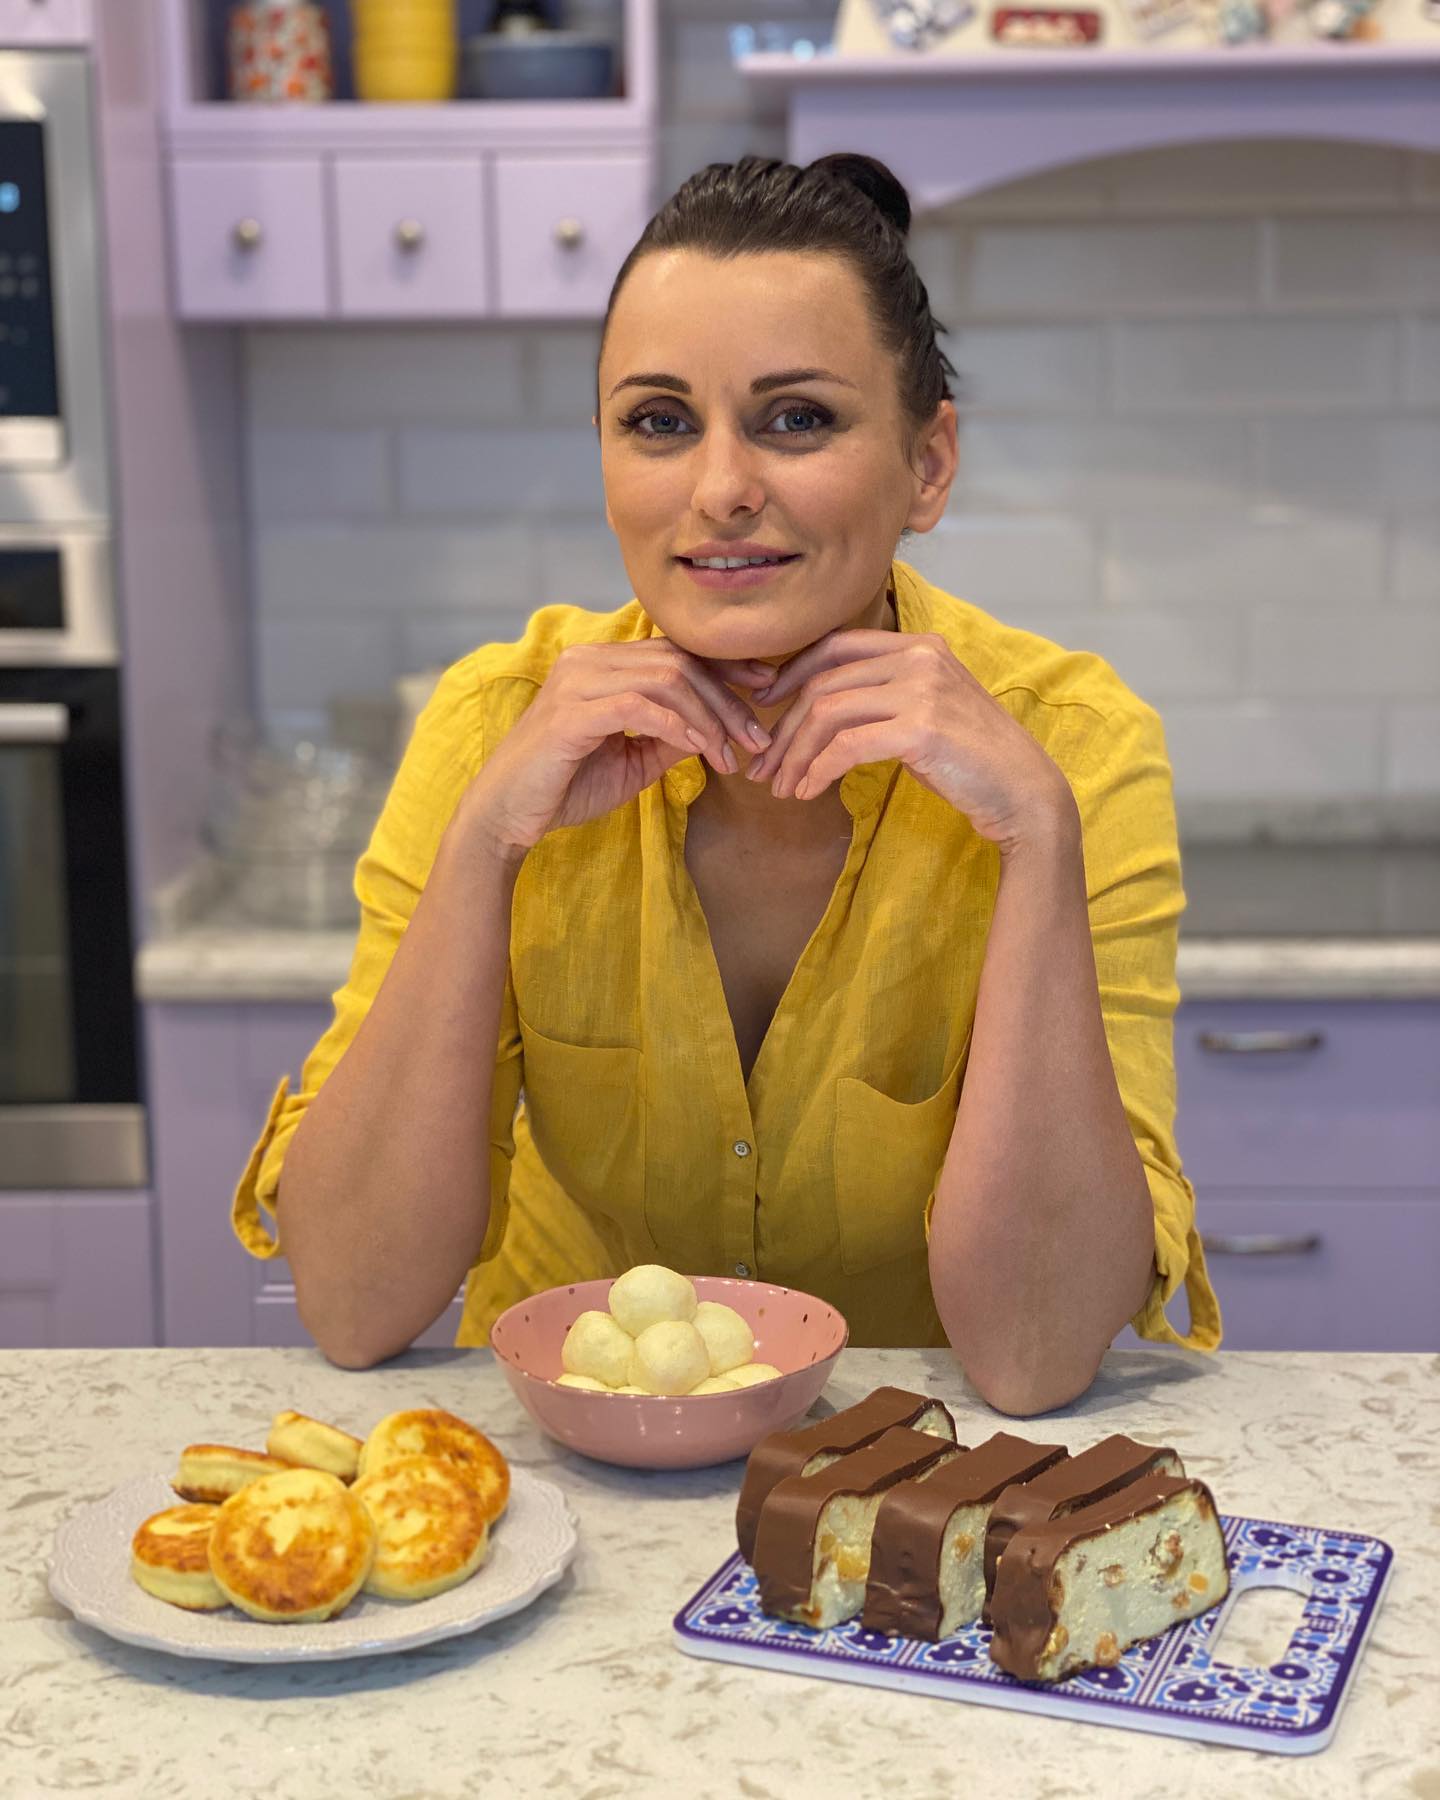 Львівський сирник: як приготувати традиційний український десерт за старовинним рецептом